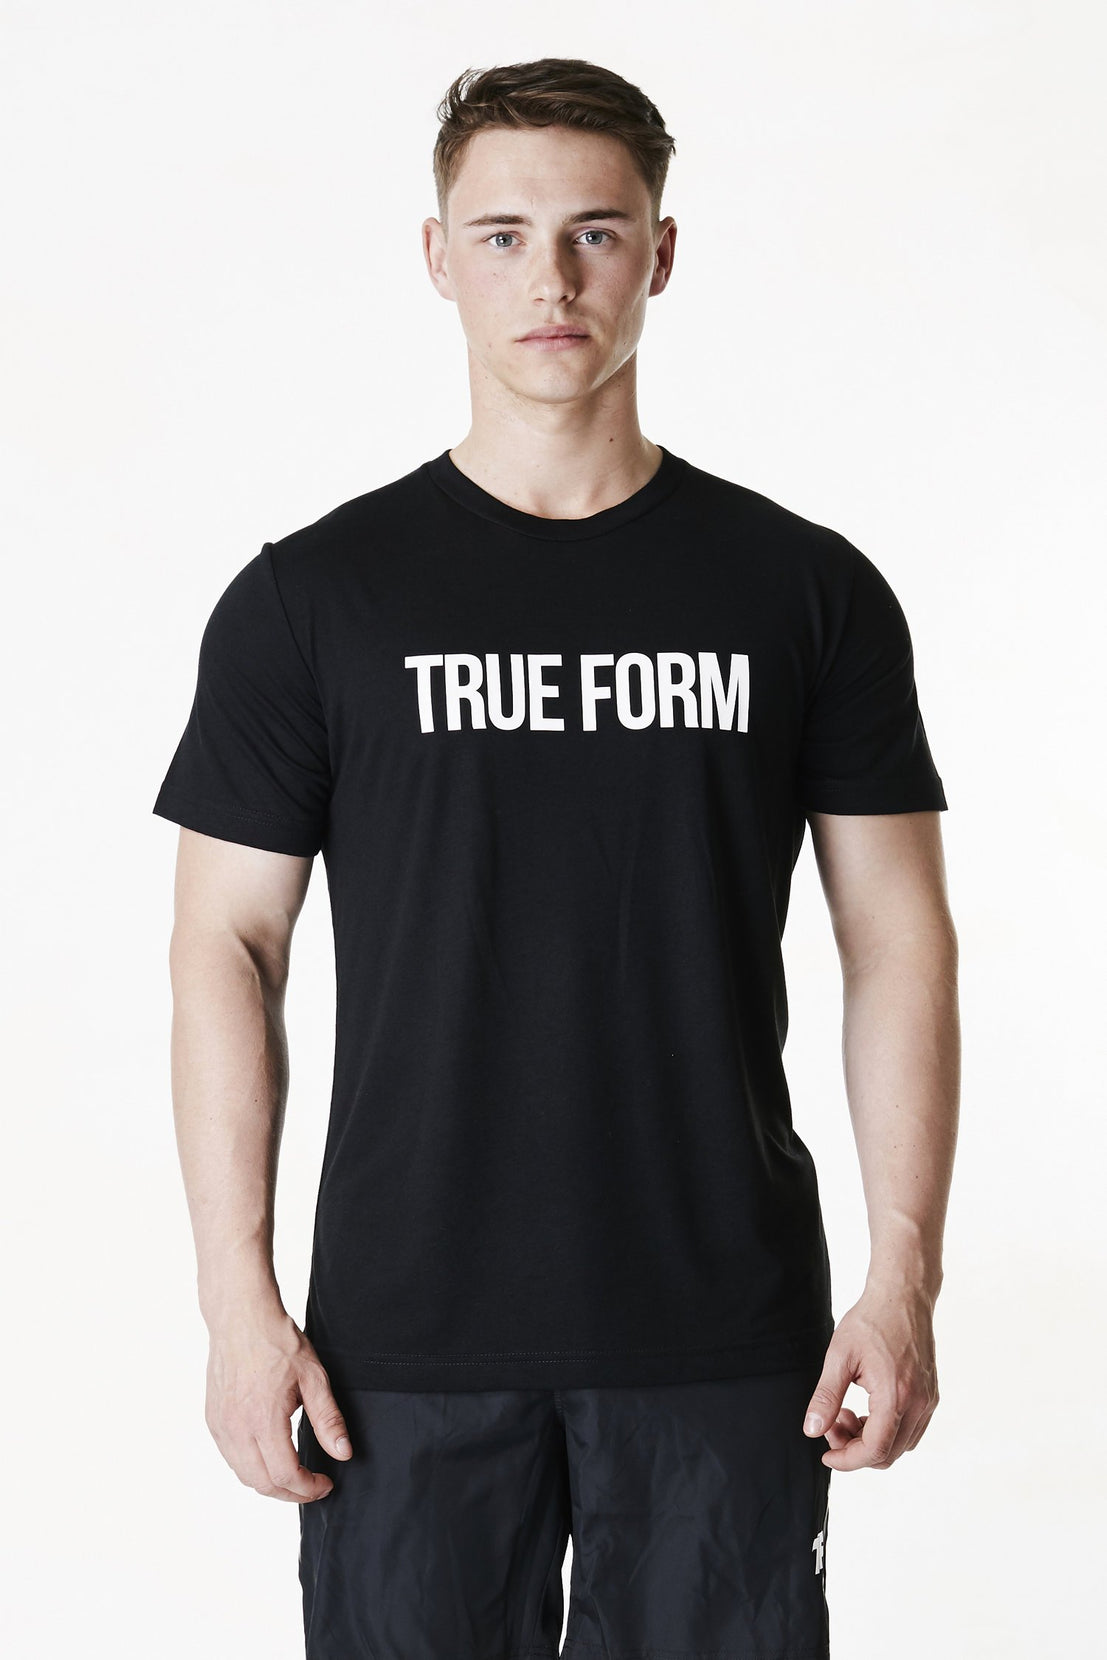 A man wearing True form Unisex Black Tshirt in UK